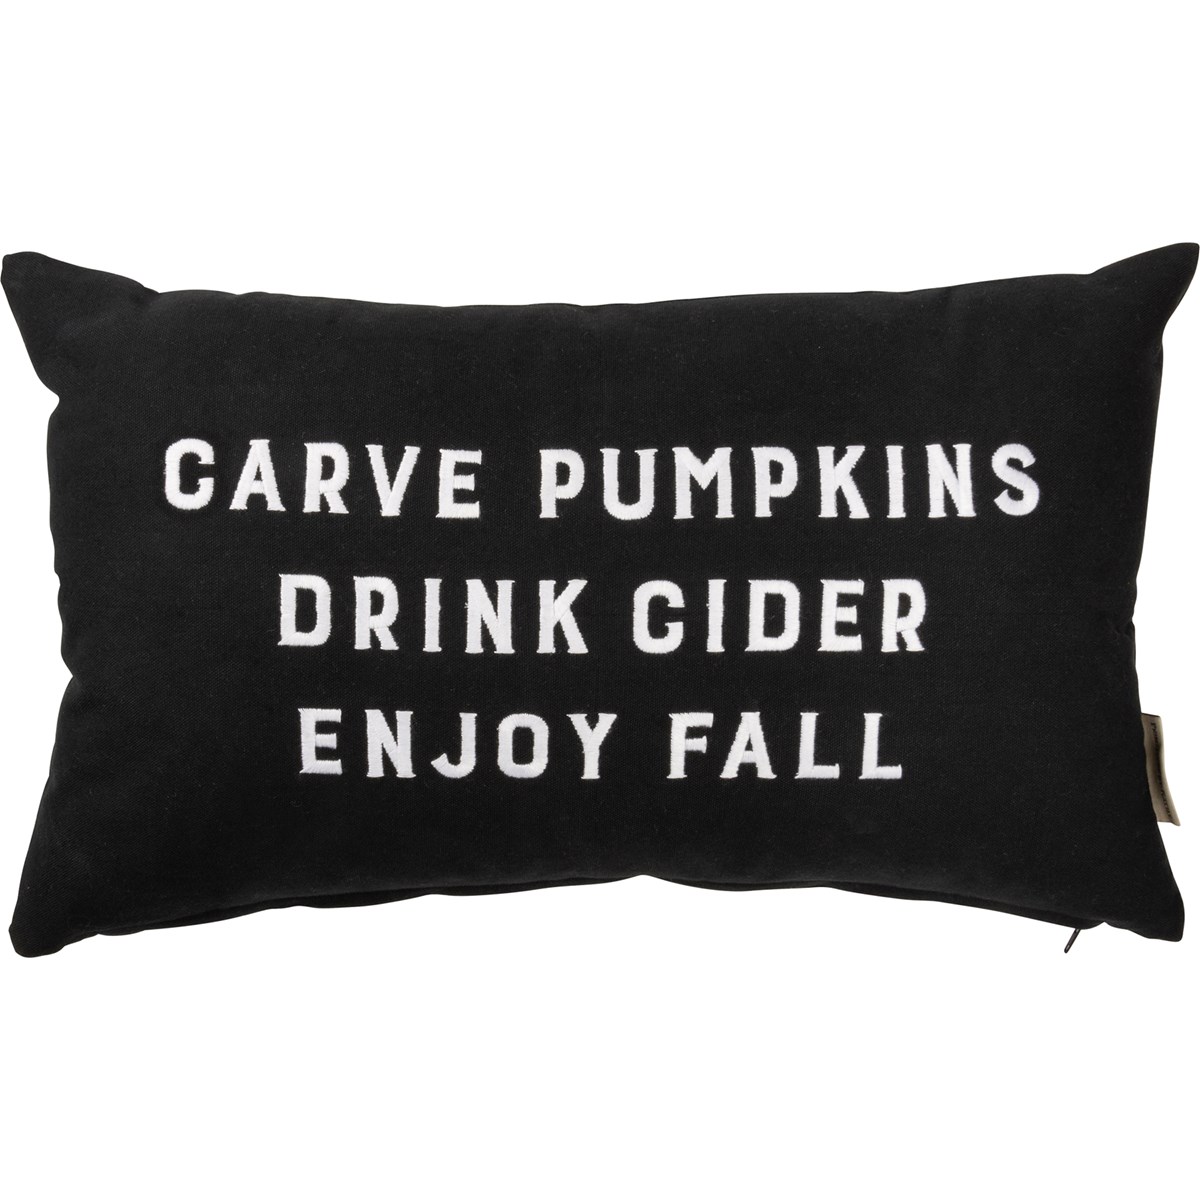 Carve Pumpkins Drink Cider Enjoy Fall Pillow - Cotton, Zipper